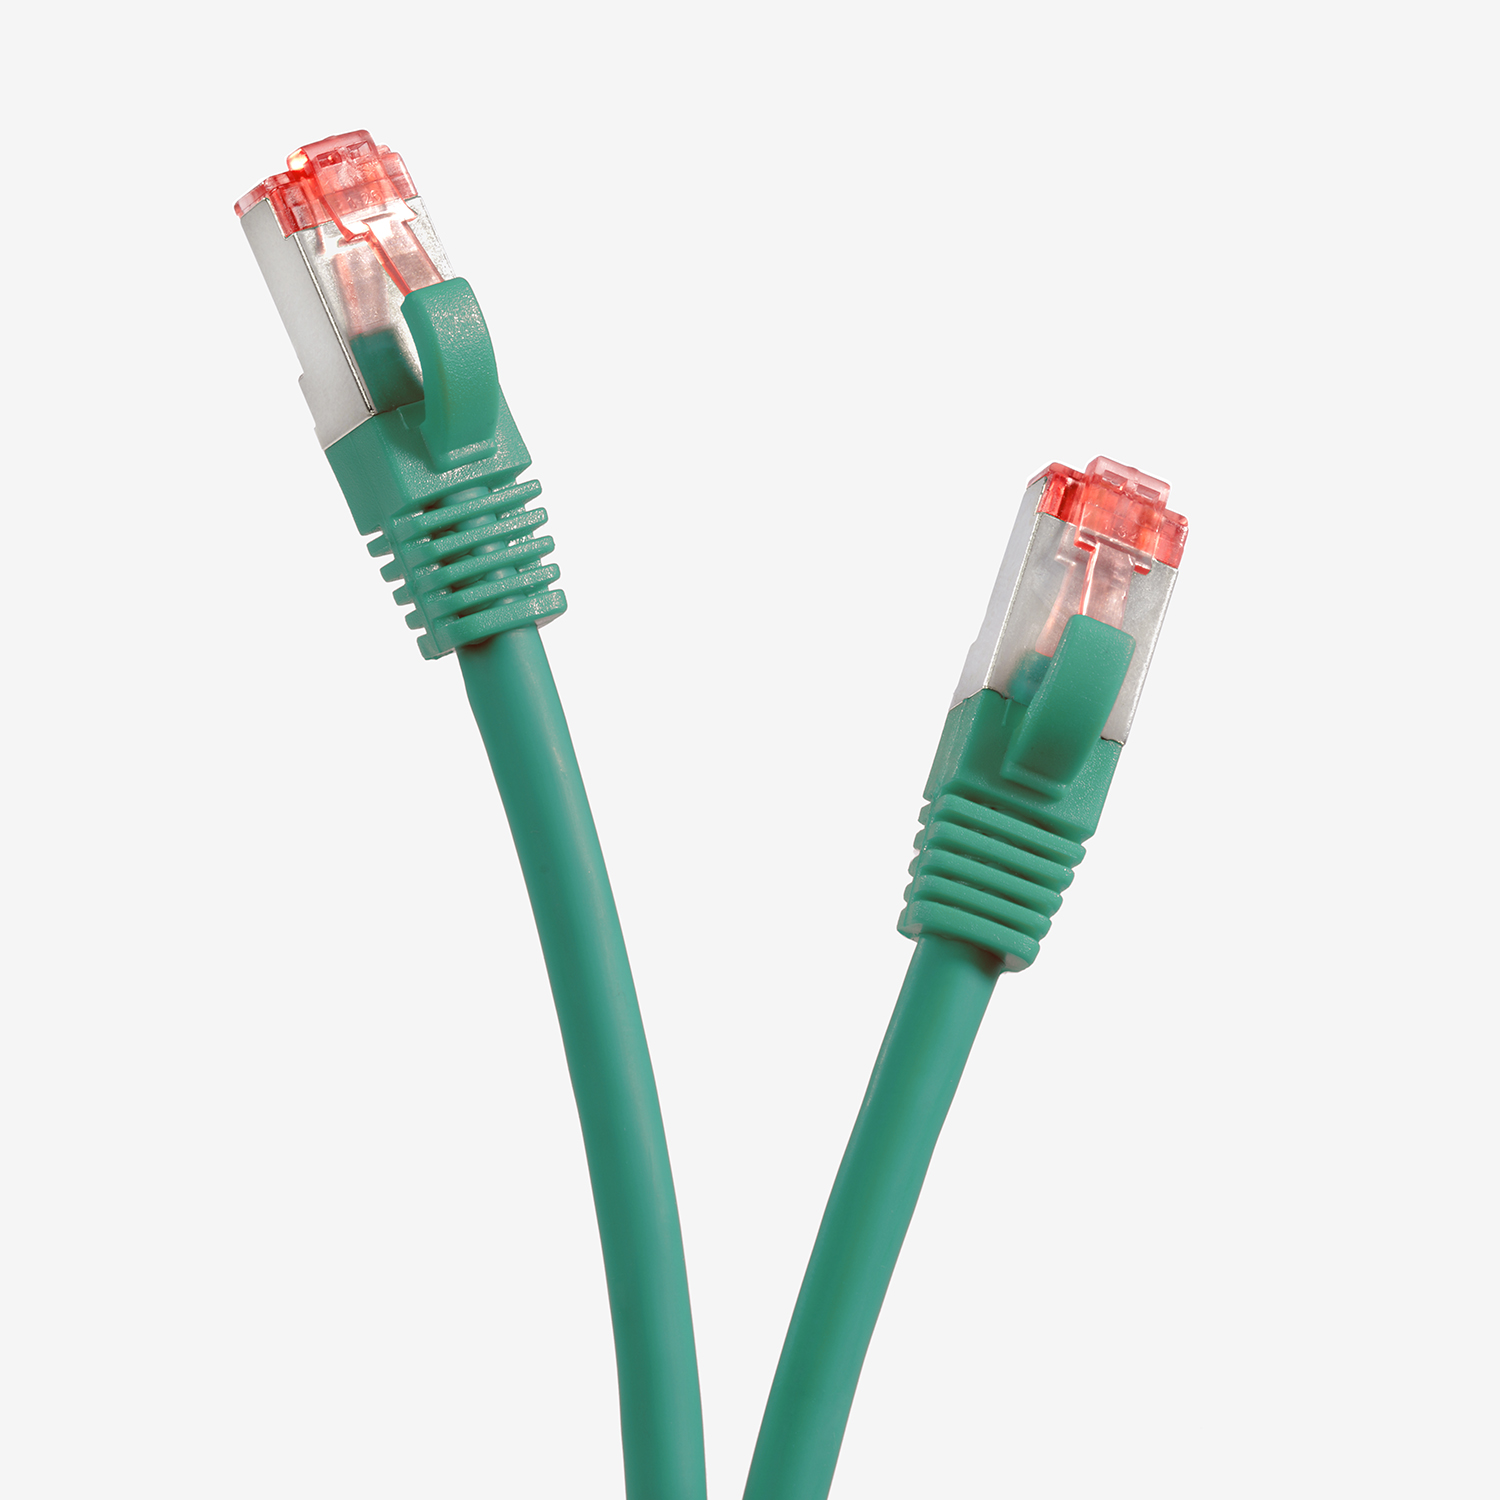 1 Patchkabel 1m Netzwerkkabel / 1000Mbit, S/FTP TPFNET grün, Netzwerkkabel, m